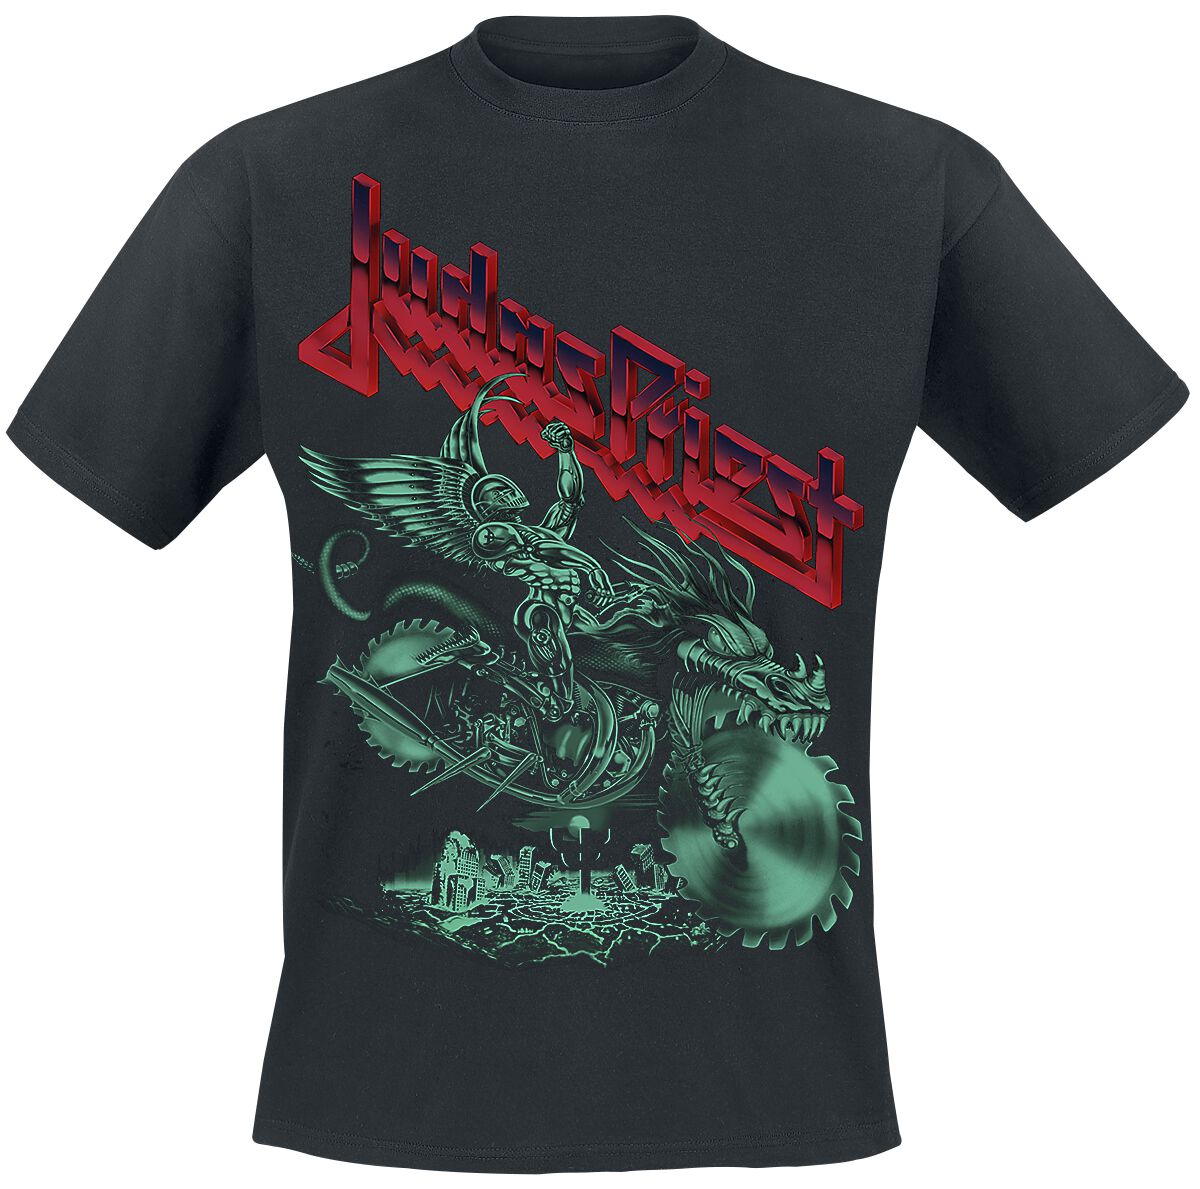 Image of Judas Priest Painkiller Invert Rider T-Shirt schwarz